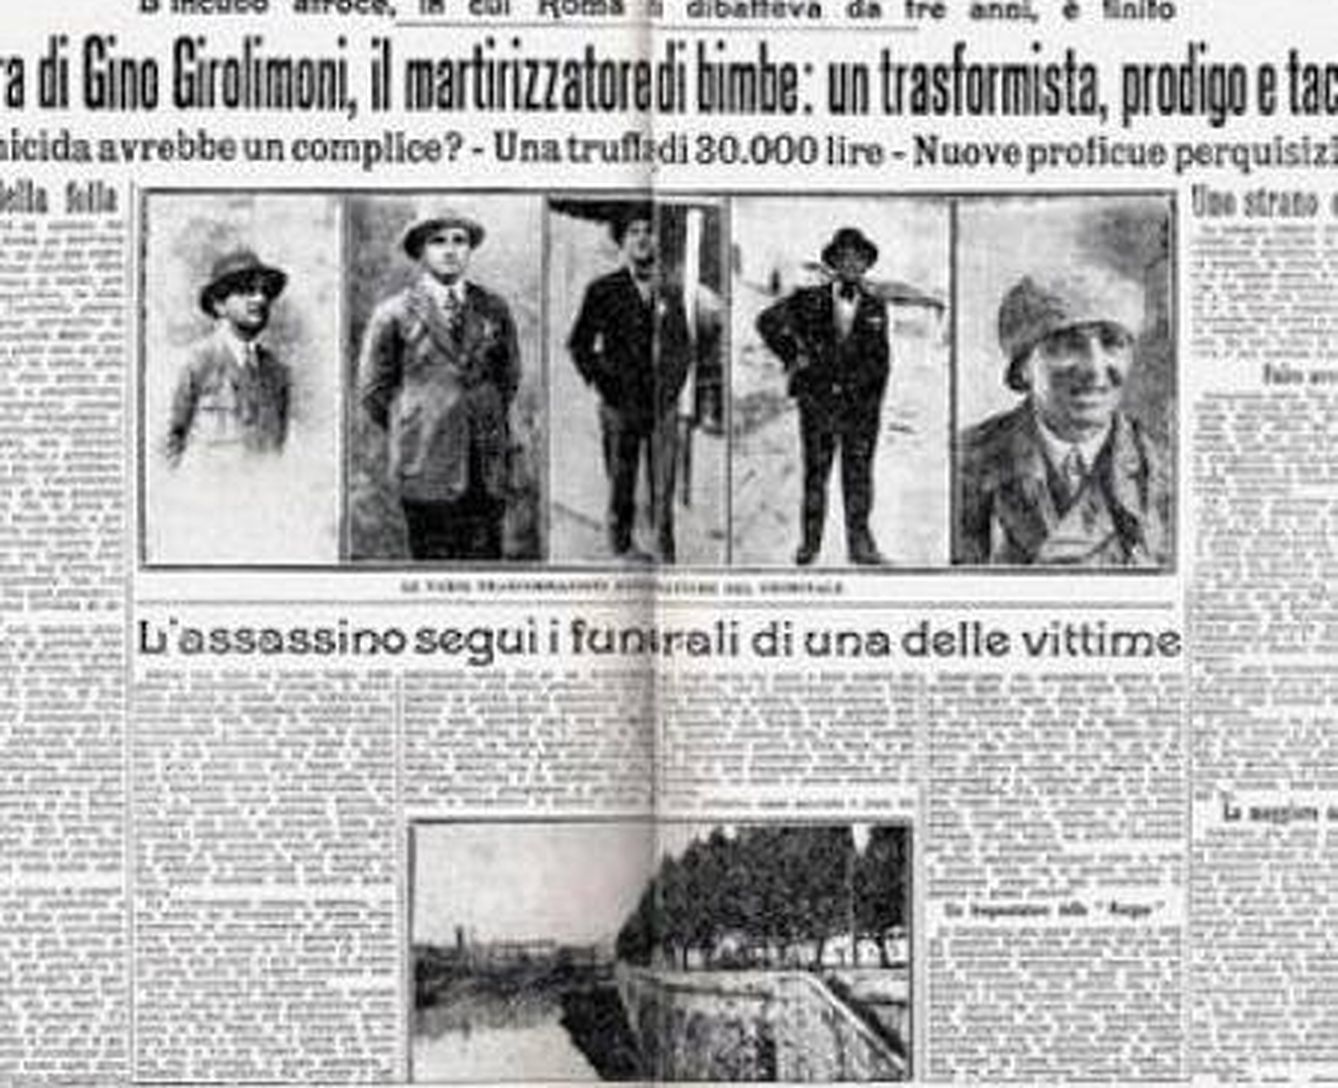 Gino Girolimoni, el martirizador de niñas.